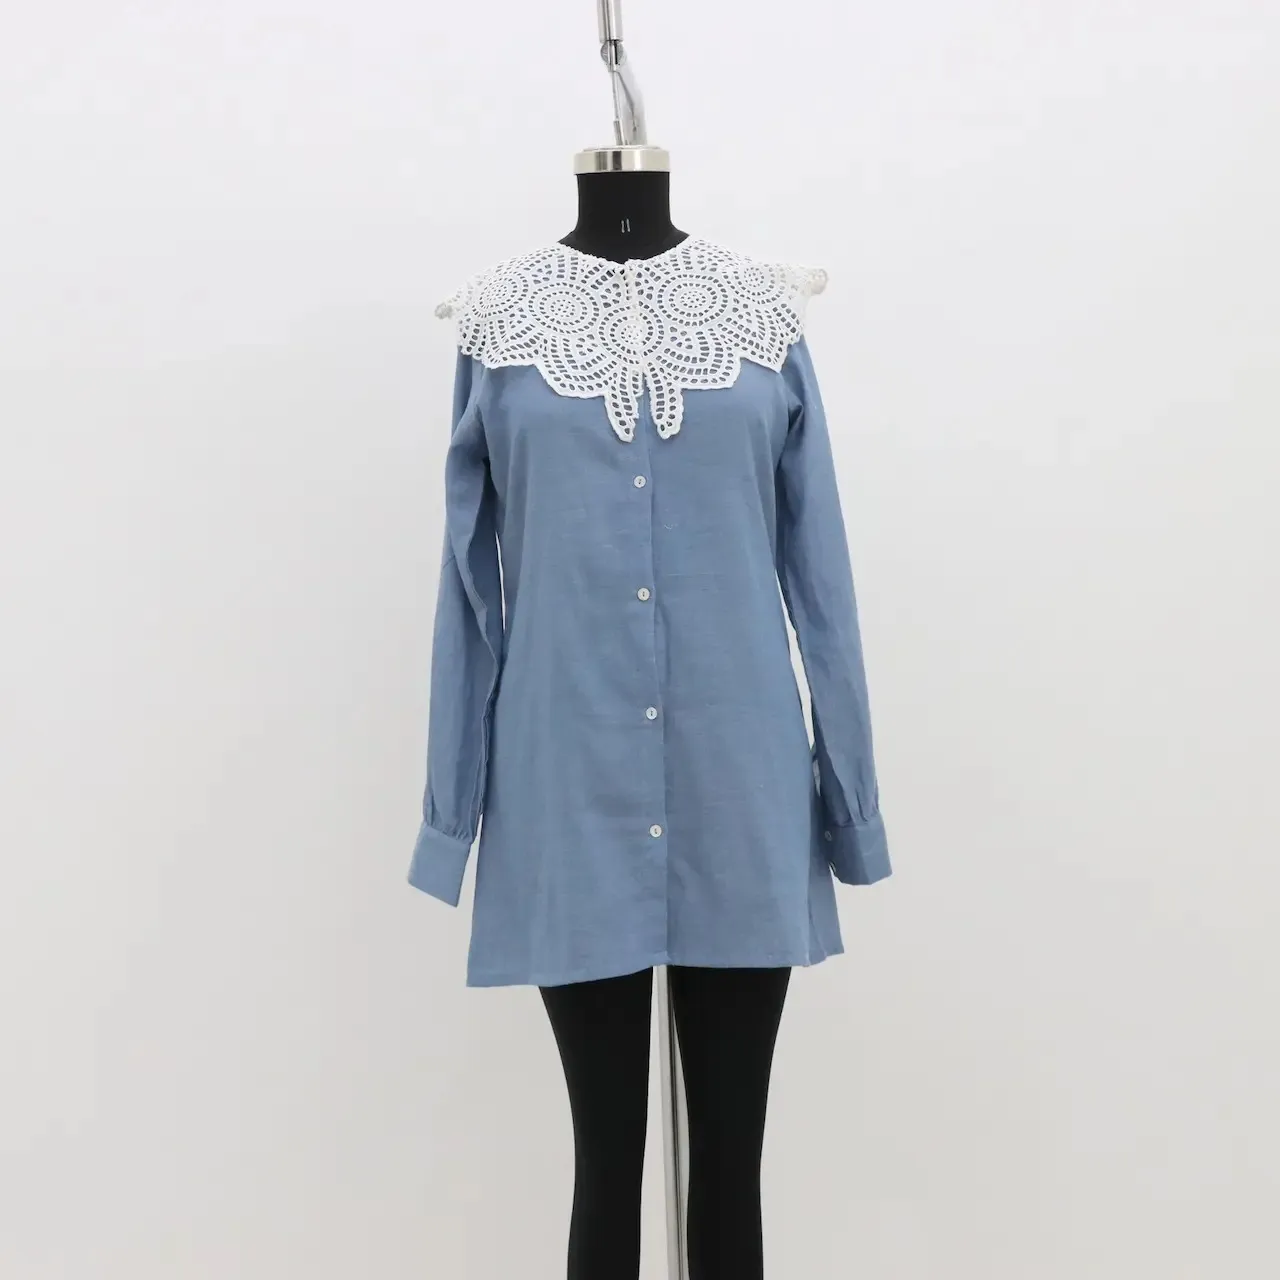 Платье-рубашка с полной планкой и манжетами, изготовленное в Индии, с использованием высококачественного сырья и с максимальной тщательностью